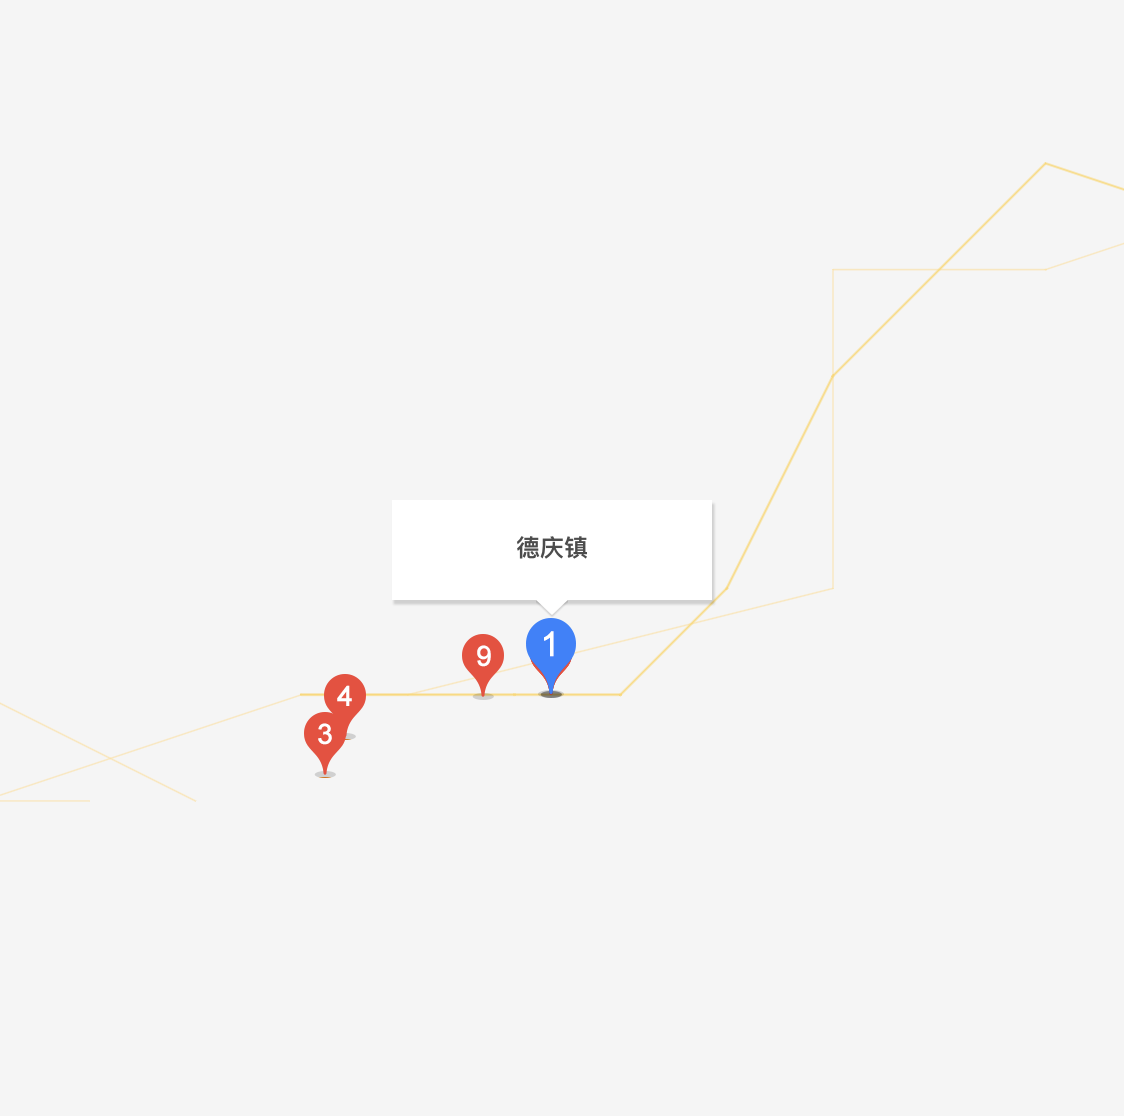 德慶鎮(西藏自治區拉薩市達孜區德慶鎮)